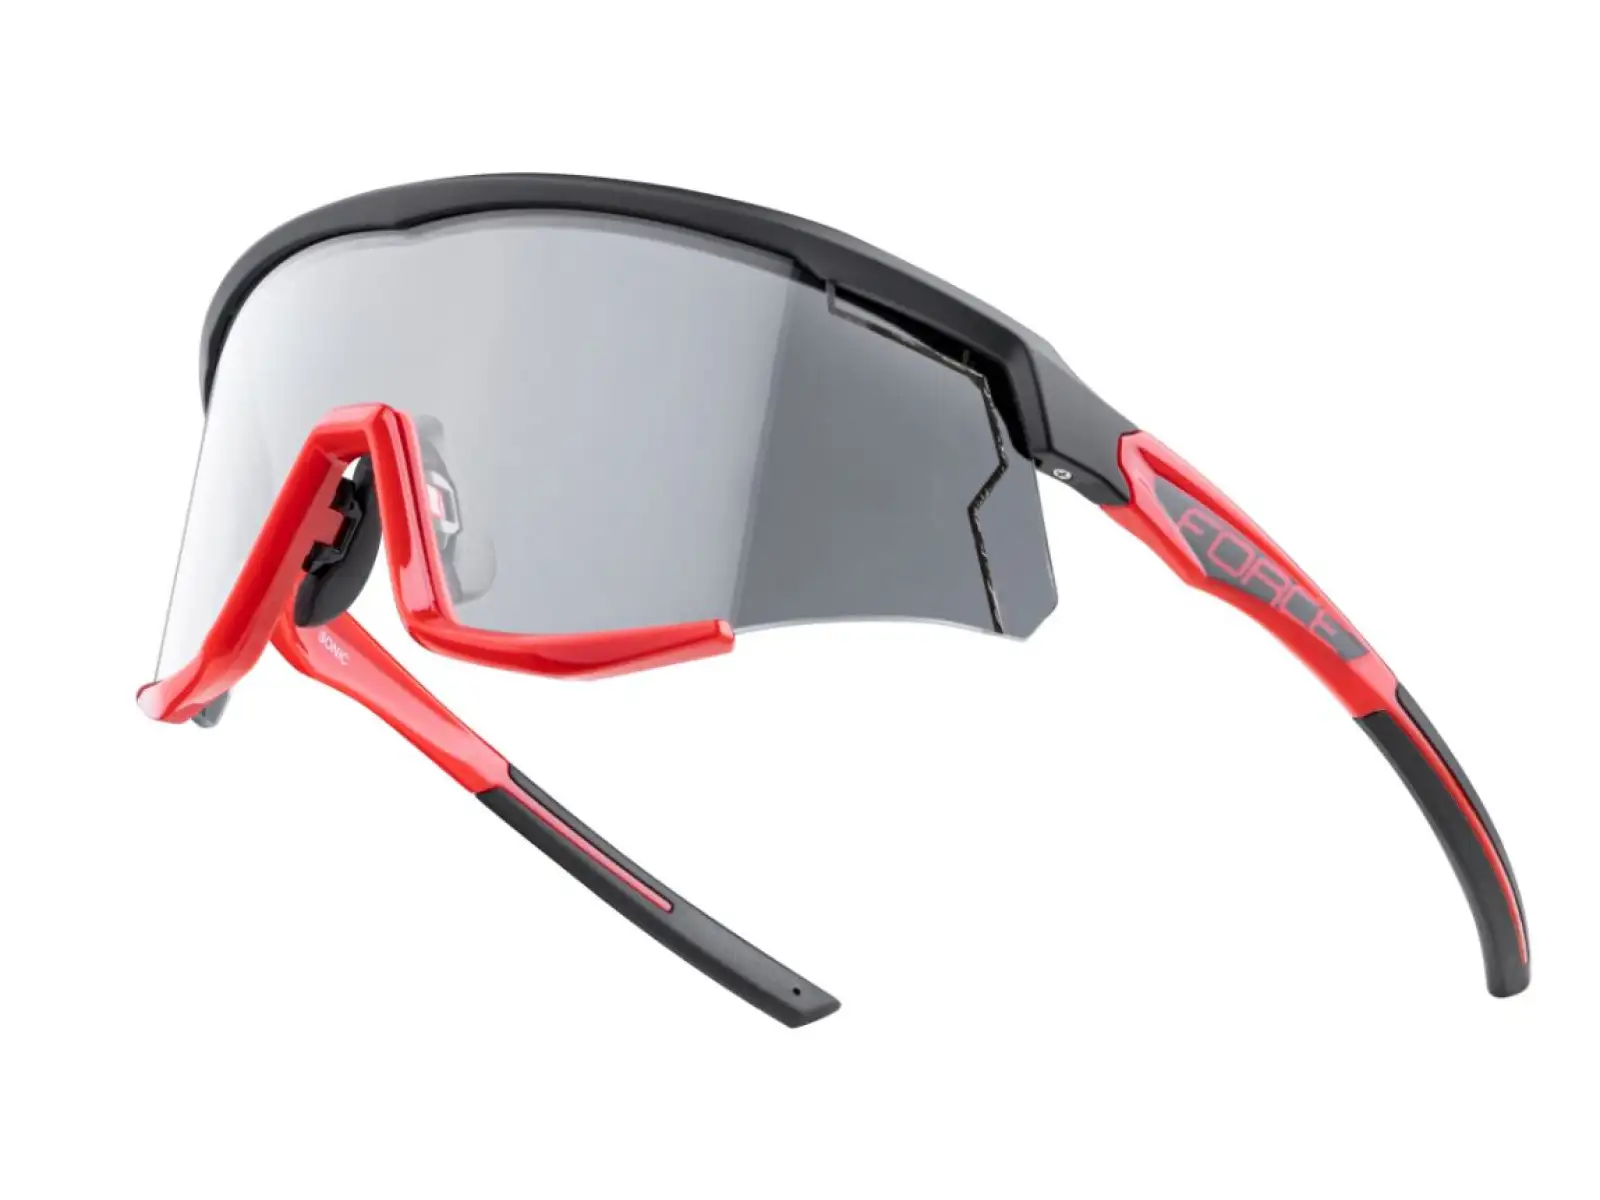 Force Sonic cyklistické brýle černá/červená, fotochromatická skla